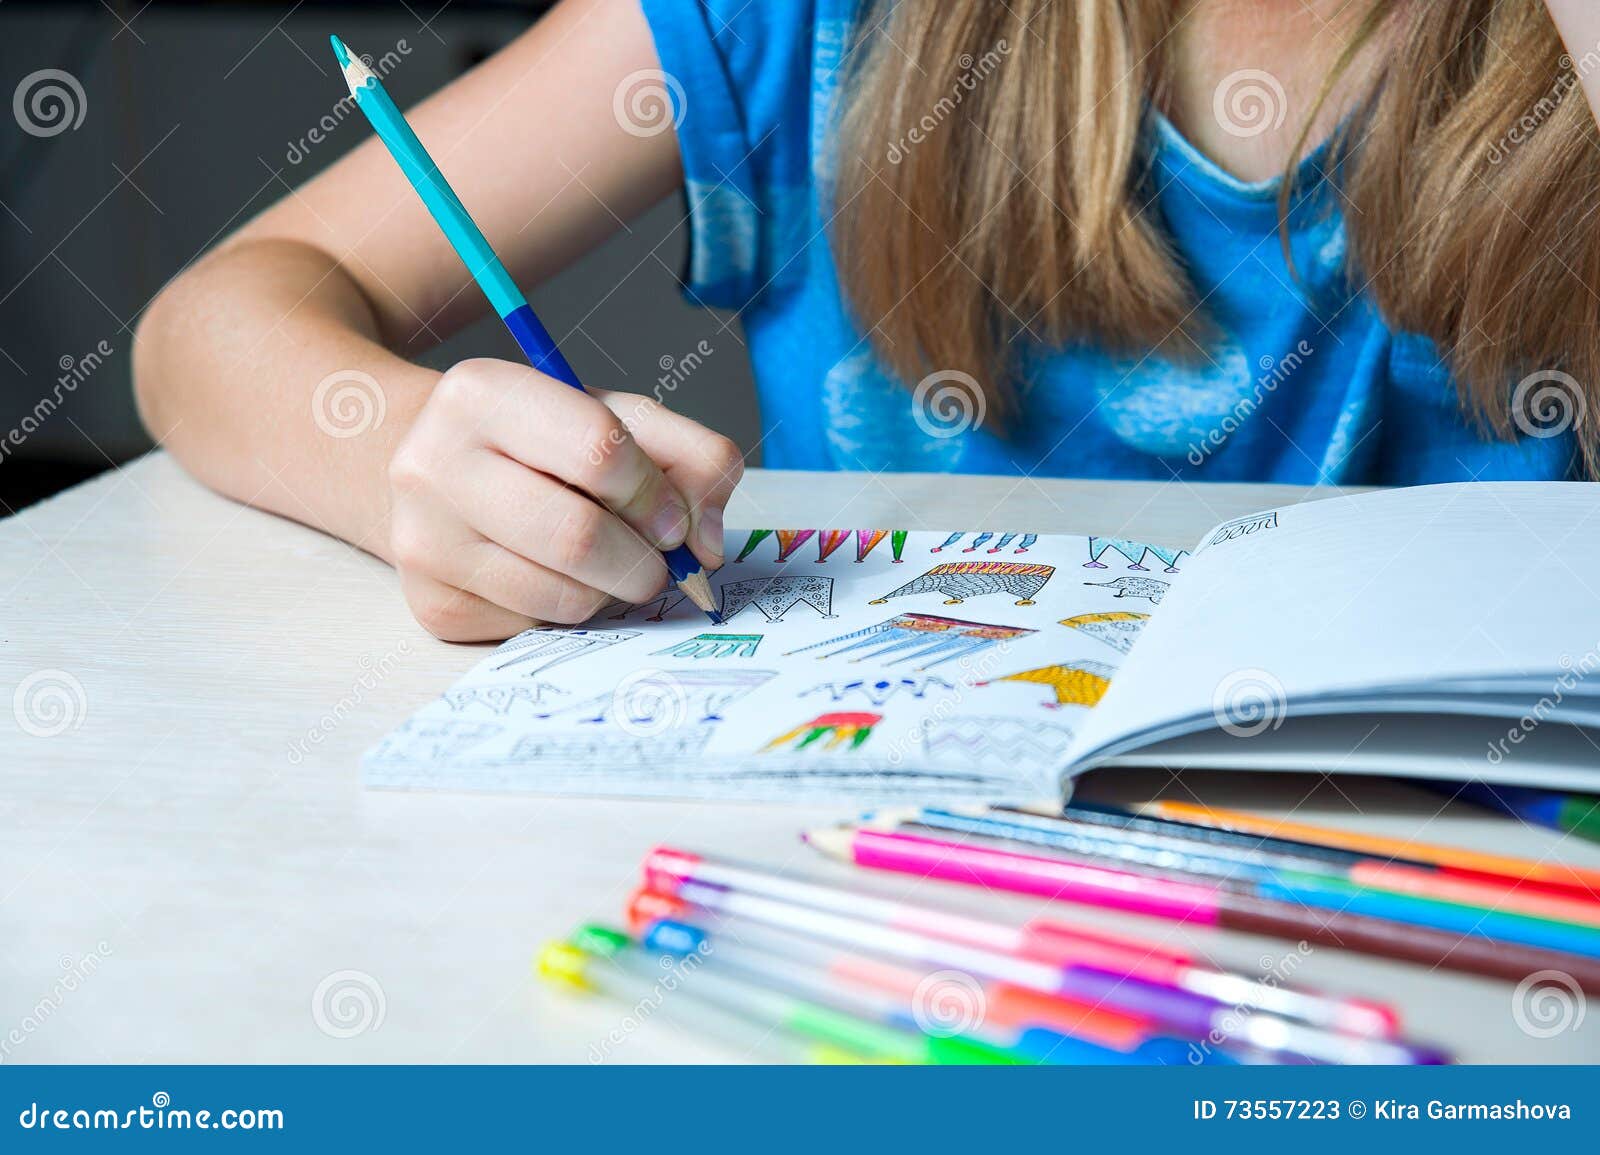 Jogos de colorir: nova mania leva crianças a colorir desenhos